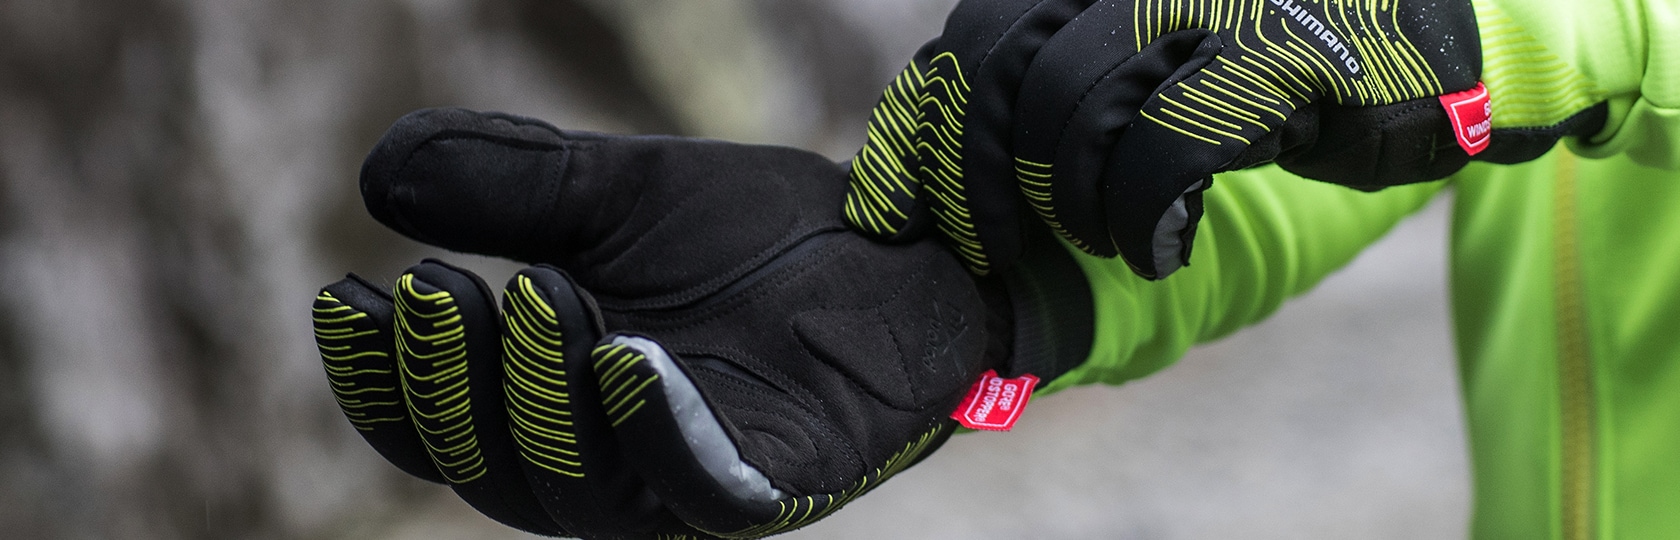 shimano cycling gloves